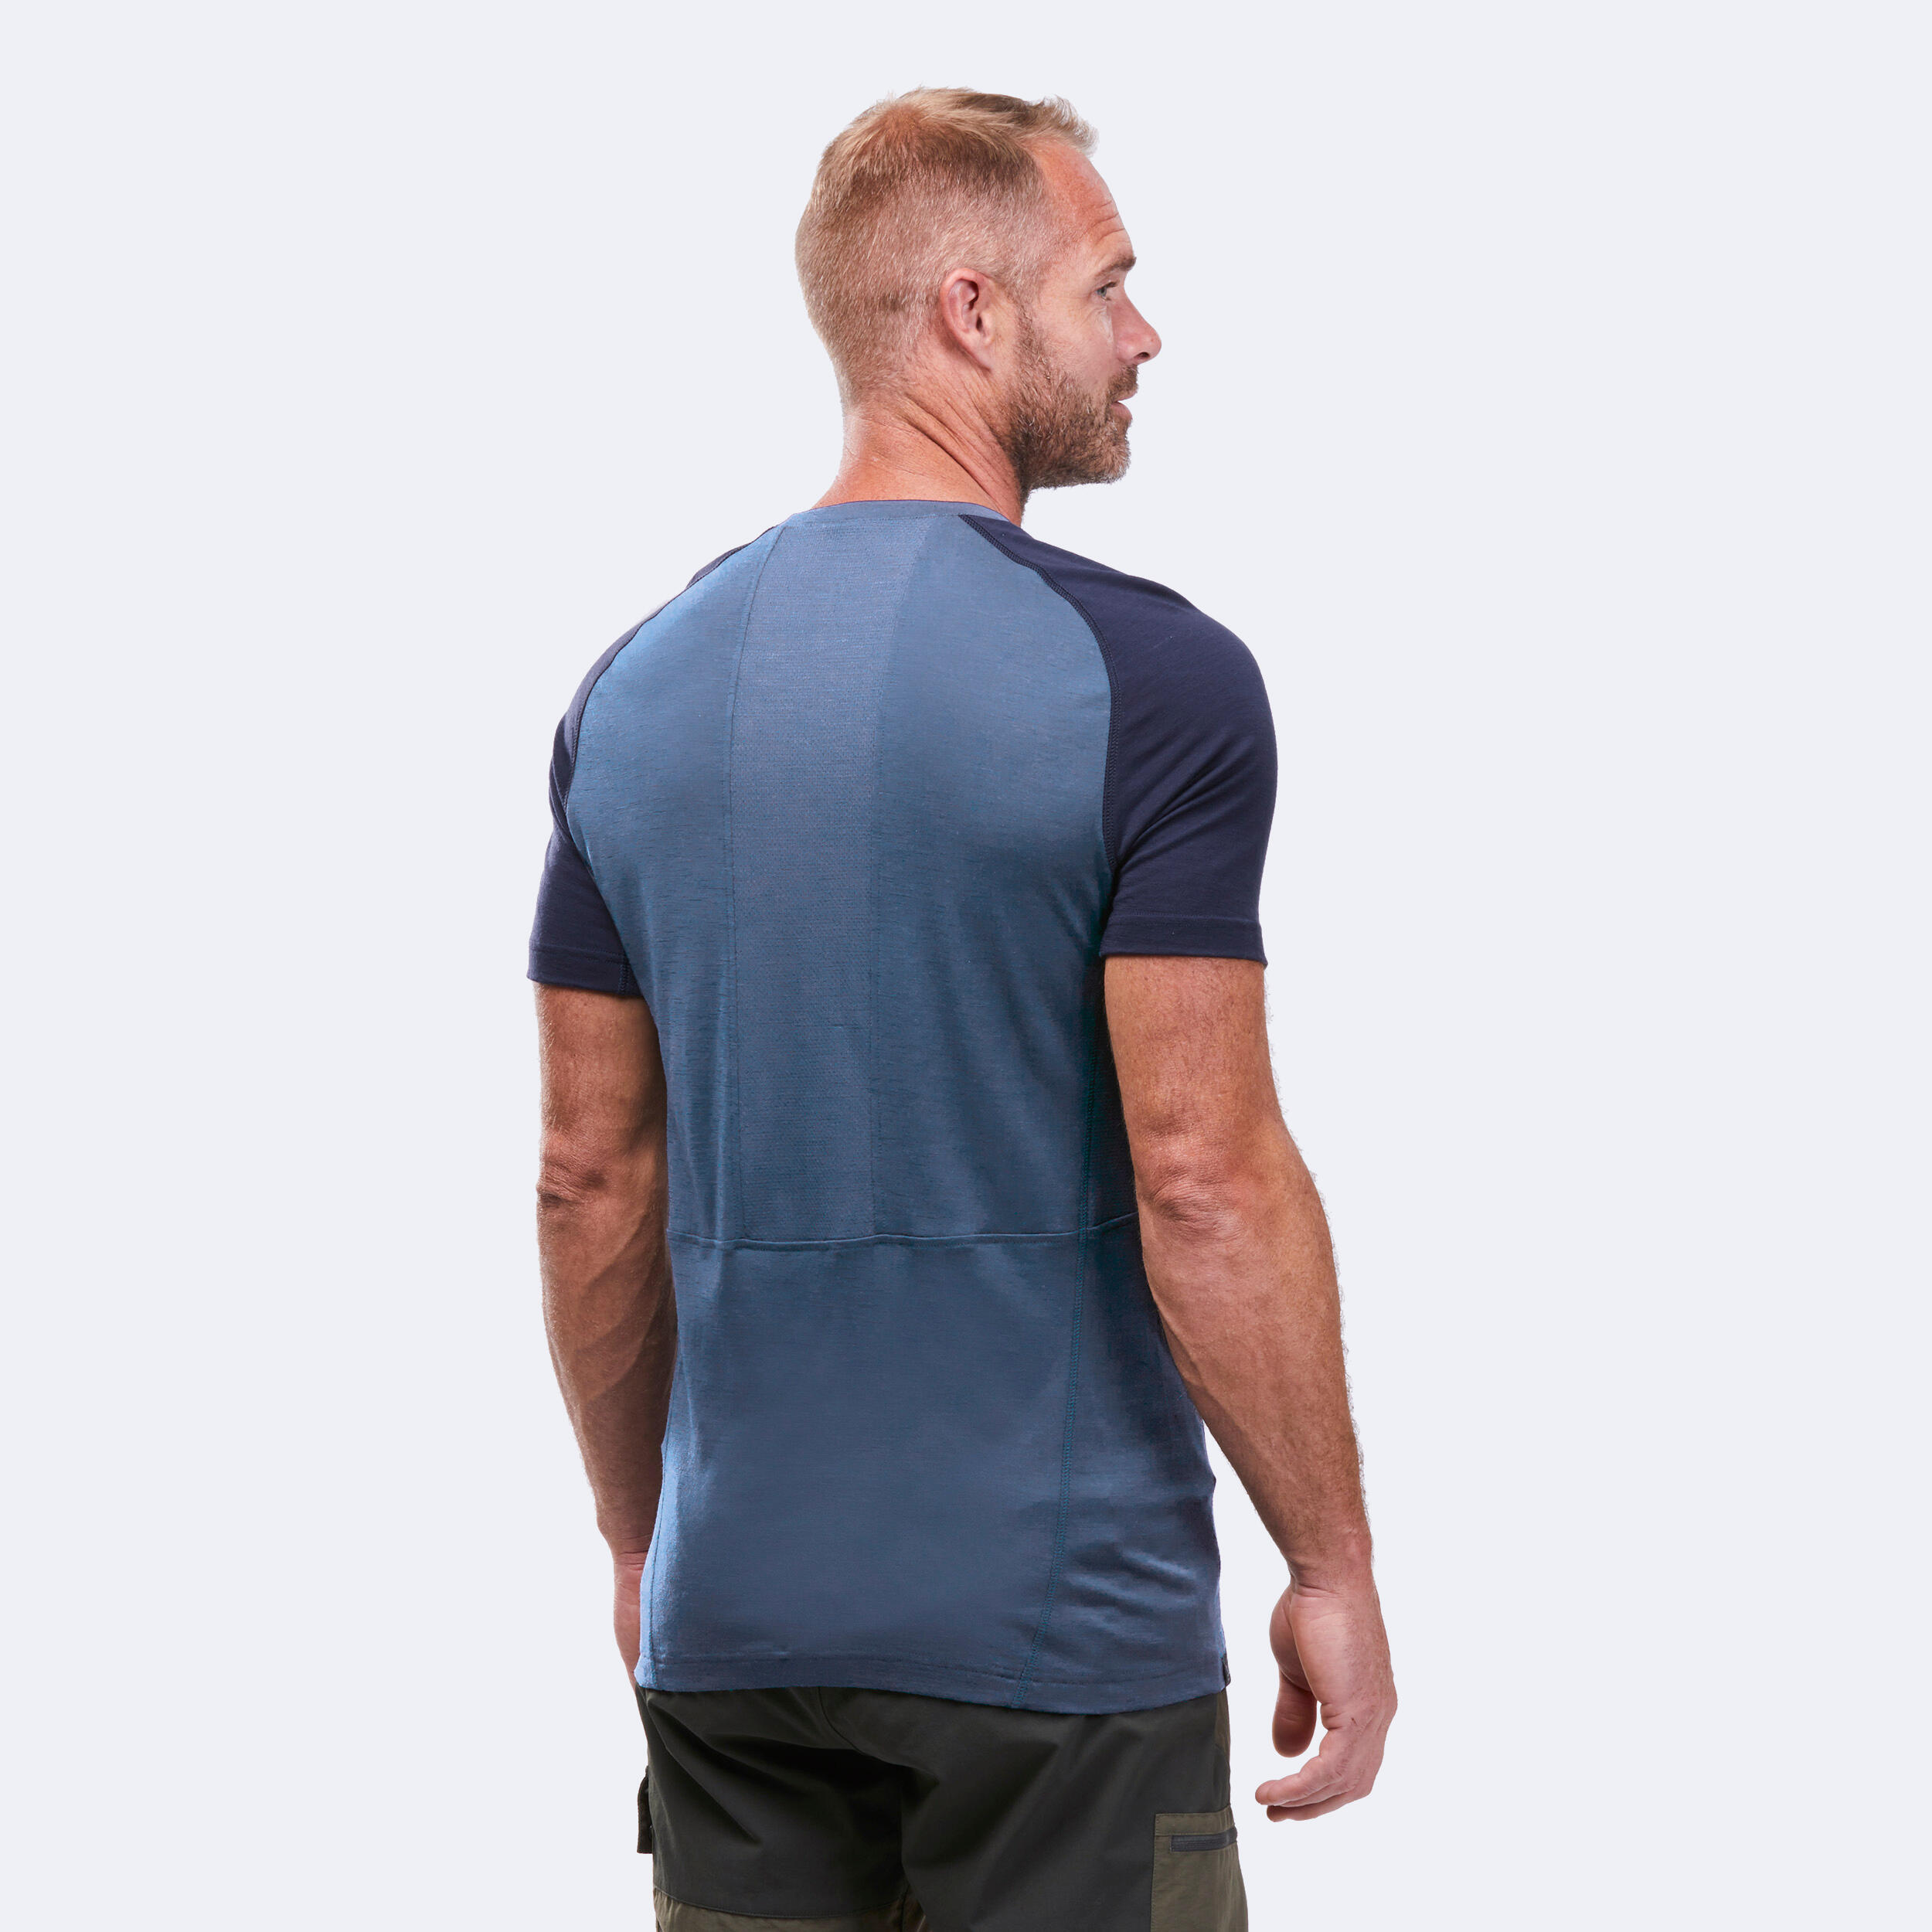 T-shirt de randonnée en laine mérinos homme – MT 500 - FORCLAZ